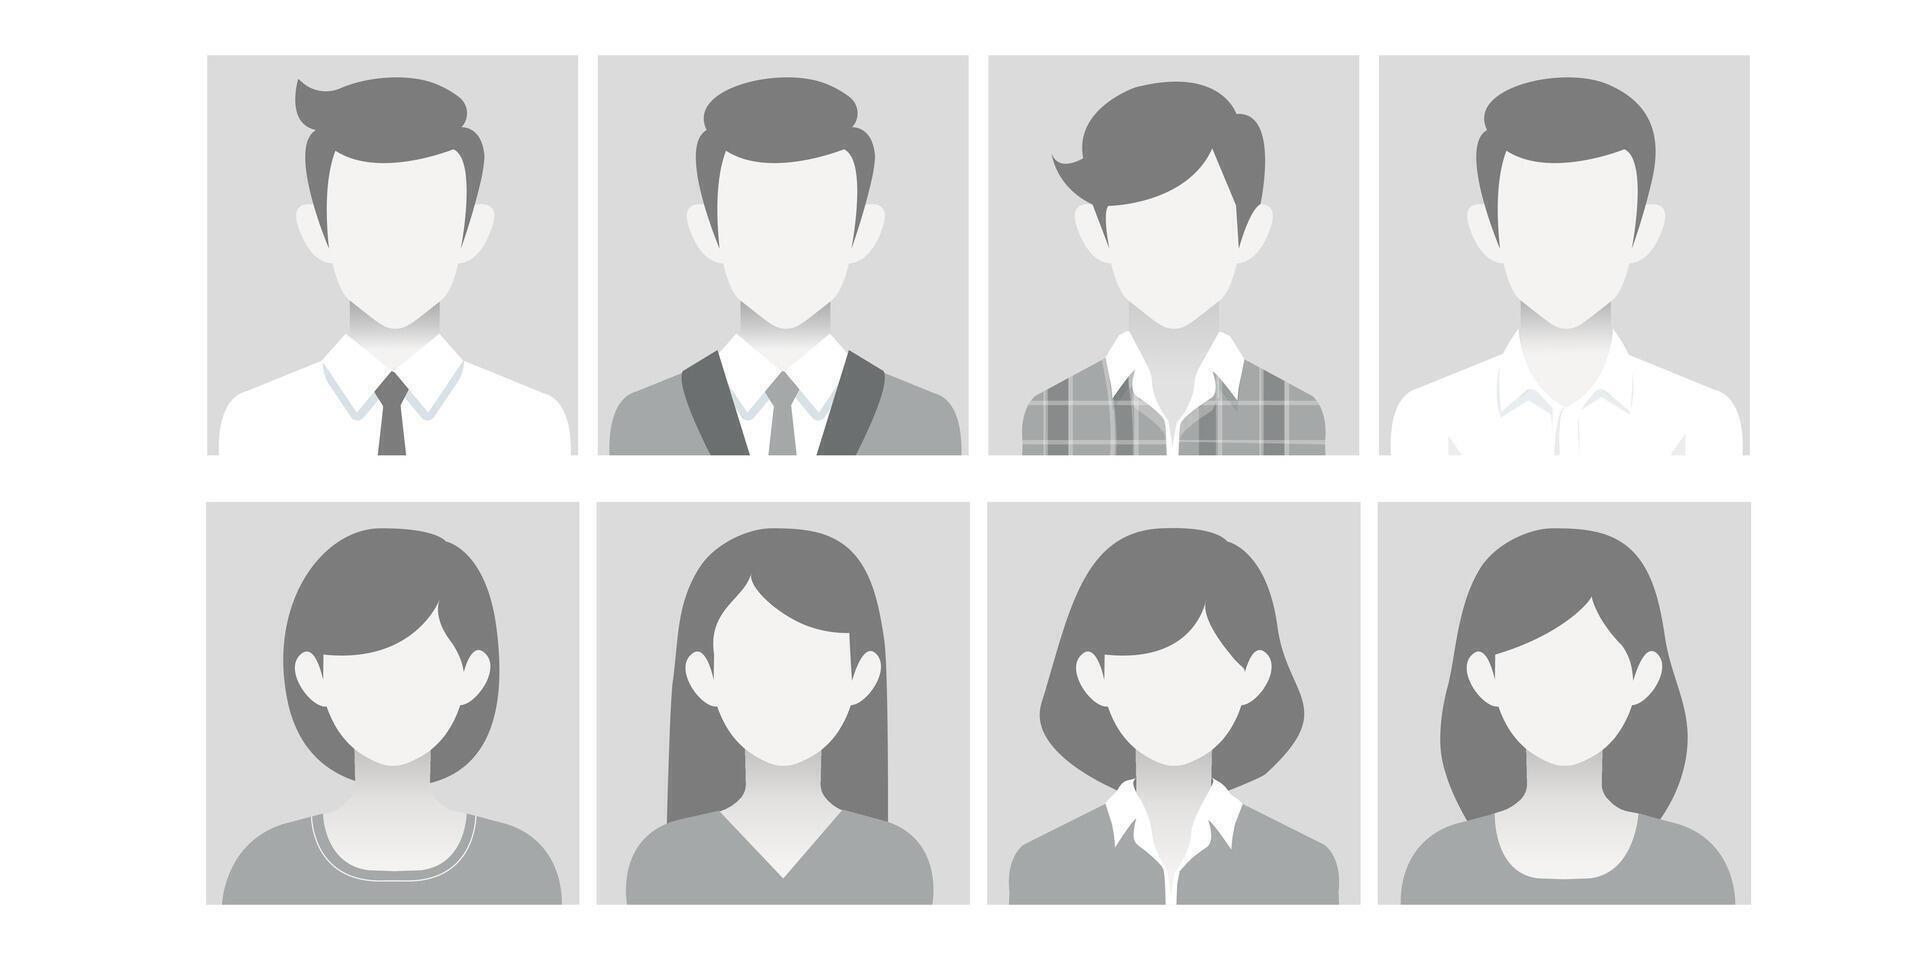 avatar, usuario perfil, persona icono, masculino y hembra silueta, perfil fotografía. vector plano ilustración en escala de grises adecuado para social medios de comunicación perfiles, iconos, salvapantallas y como un modelo.